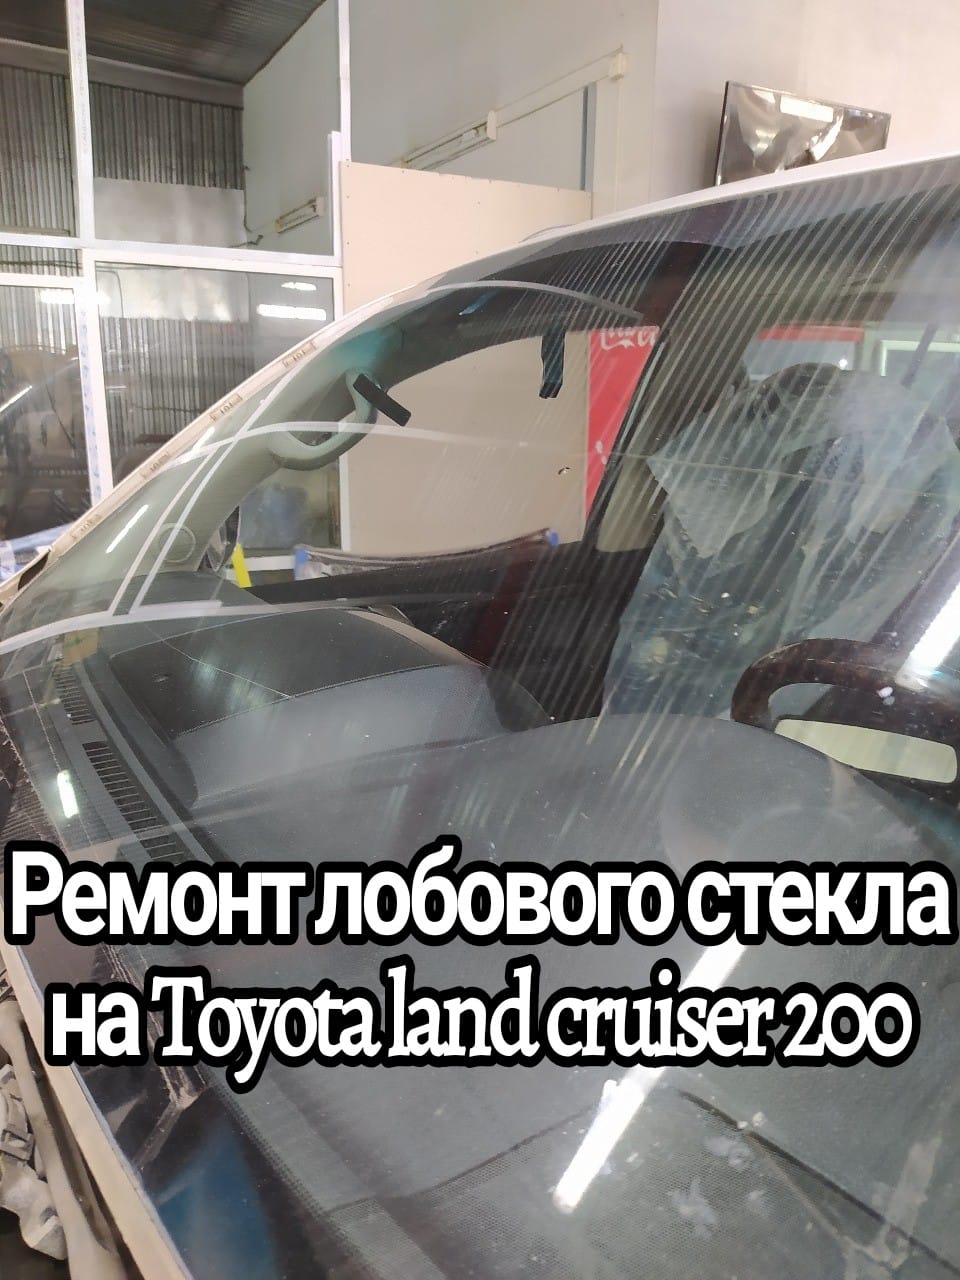 Ремонт лобового стекла на Toyota land cruiser 200